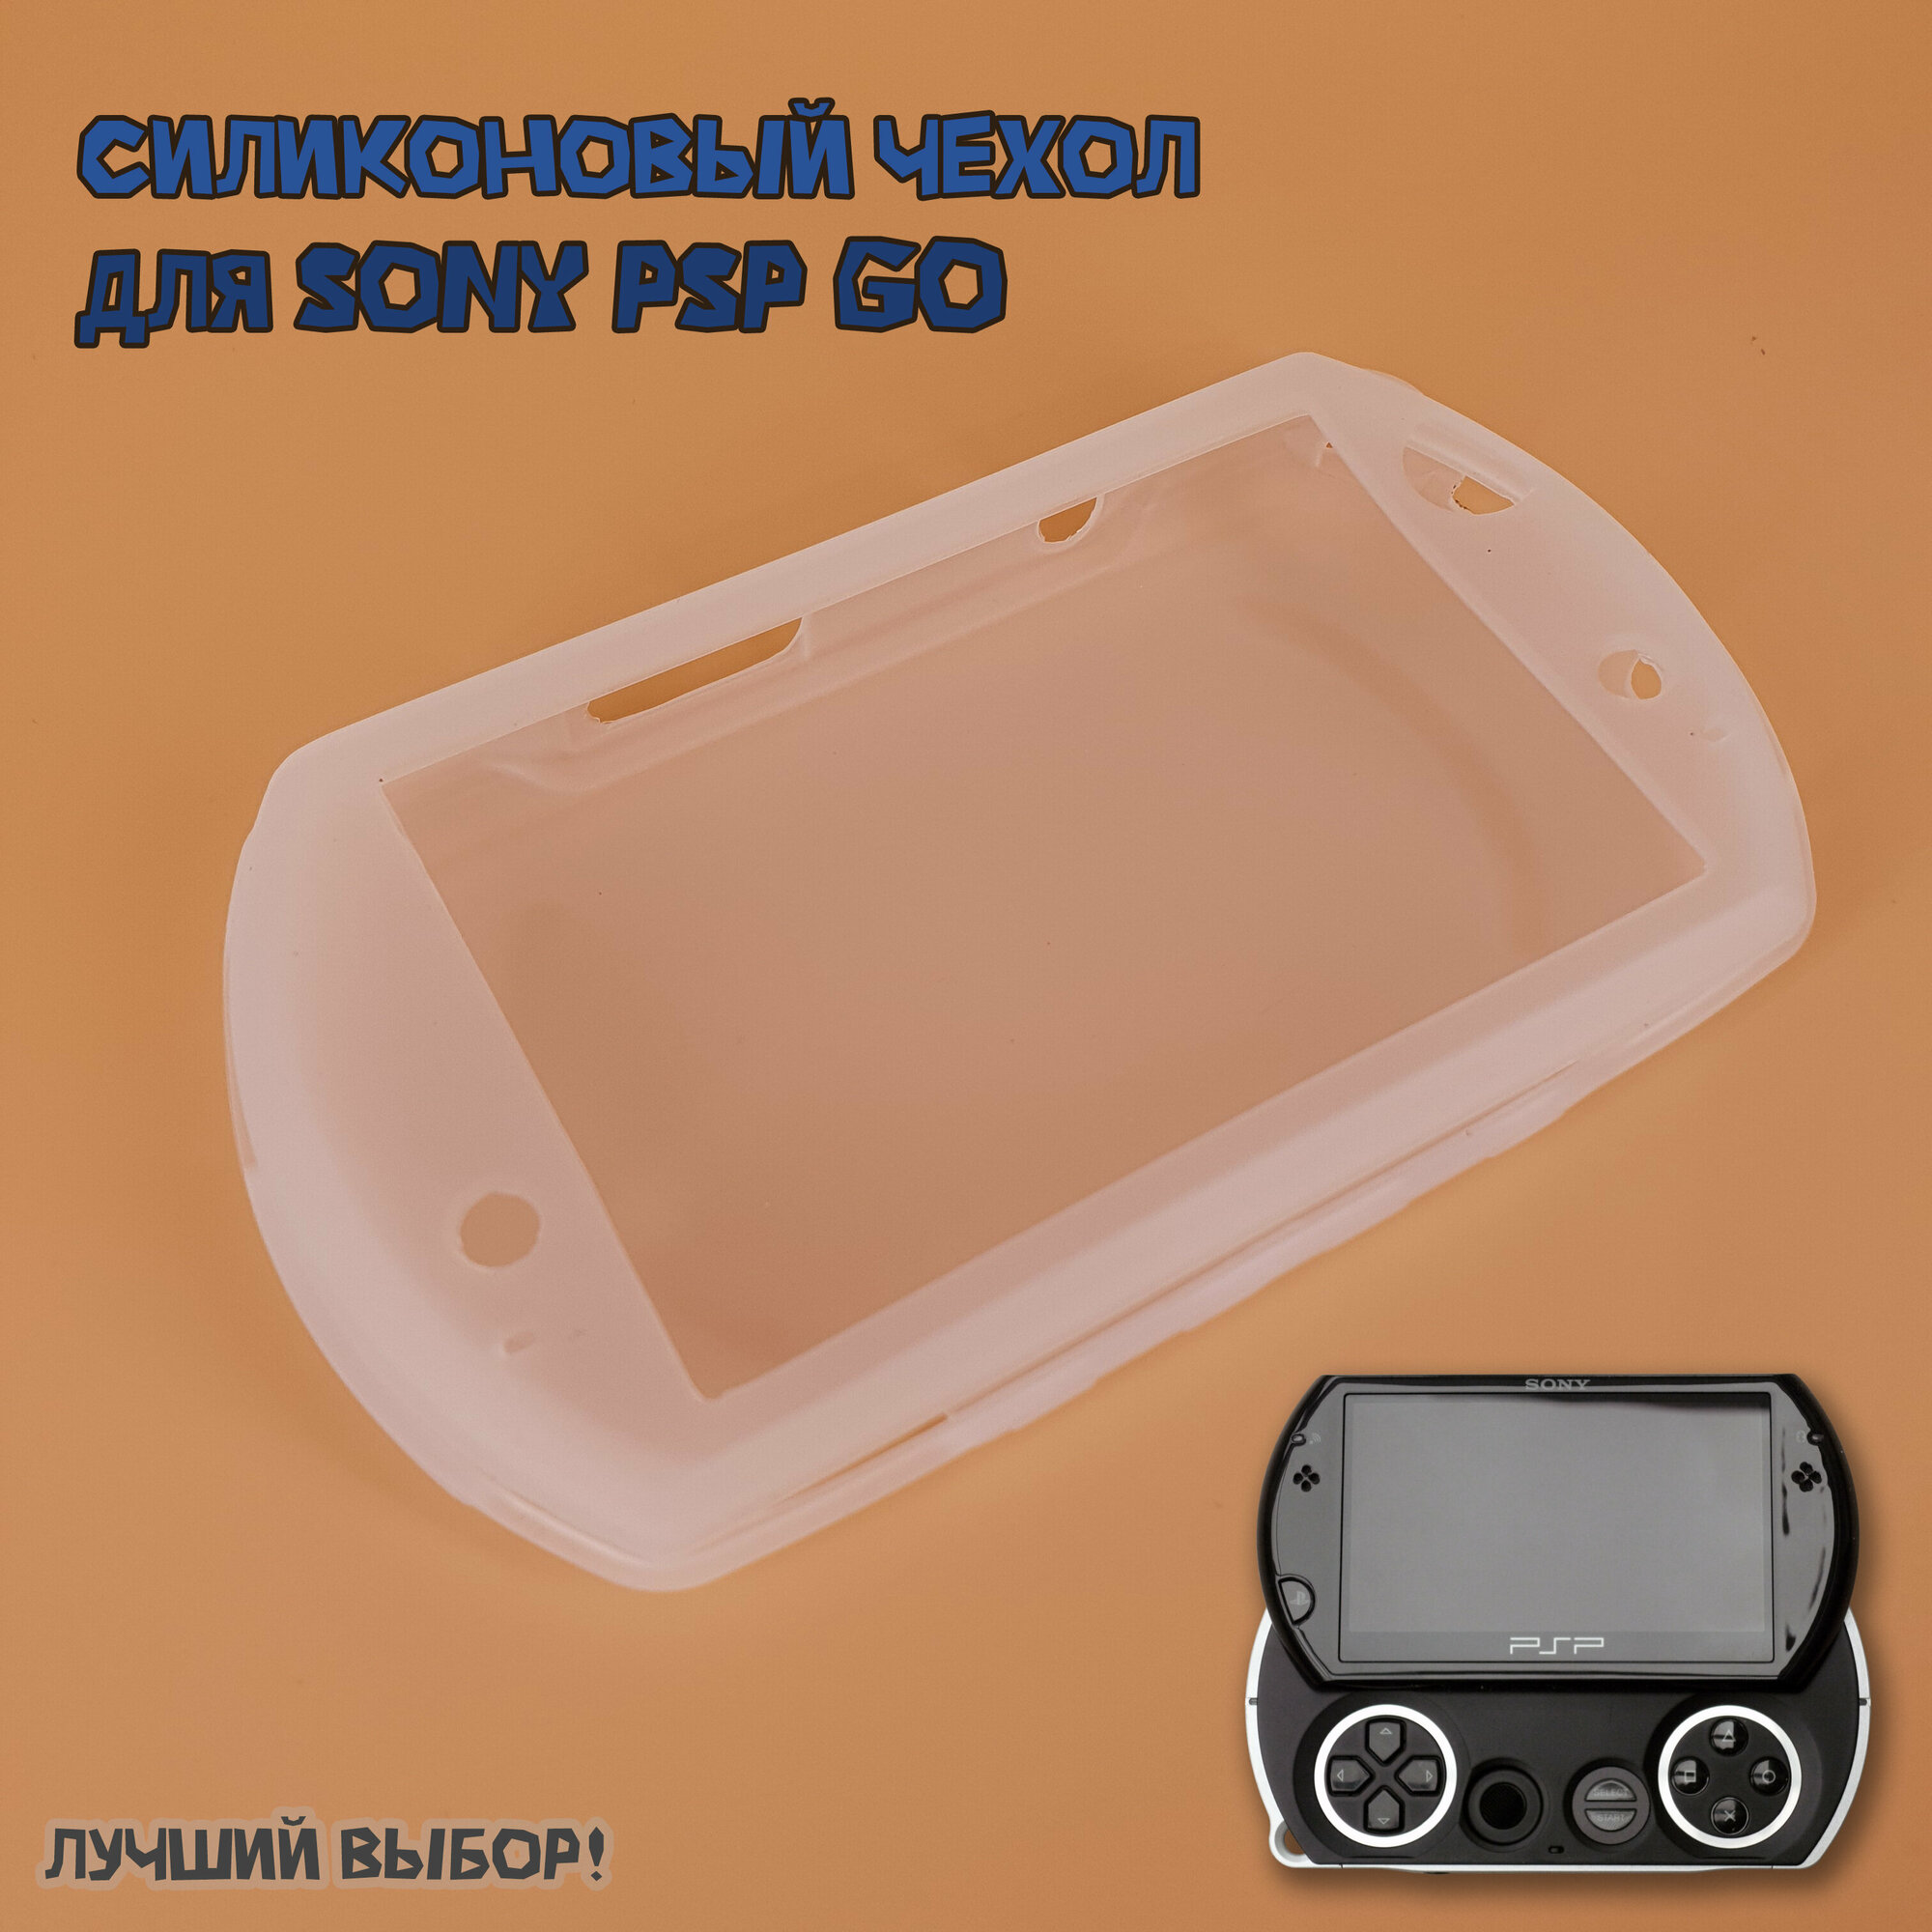 Чехол защитный силиконовый для Sony PSP GO мягкий, прозрачный